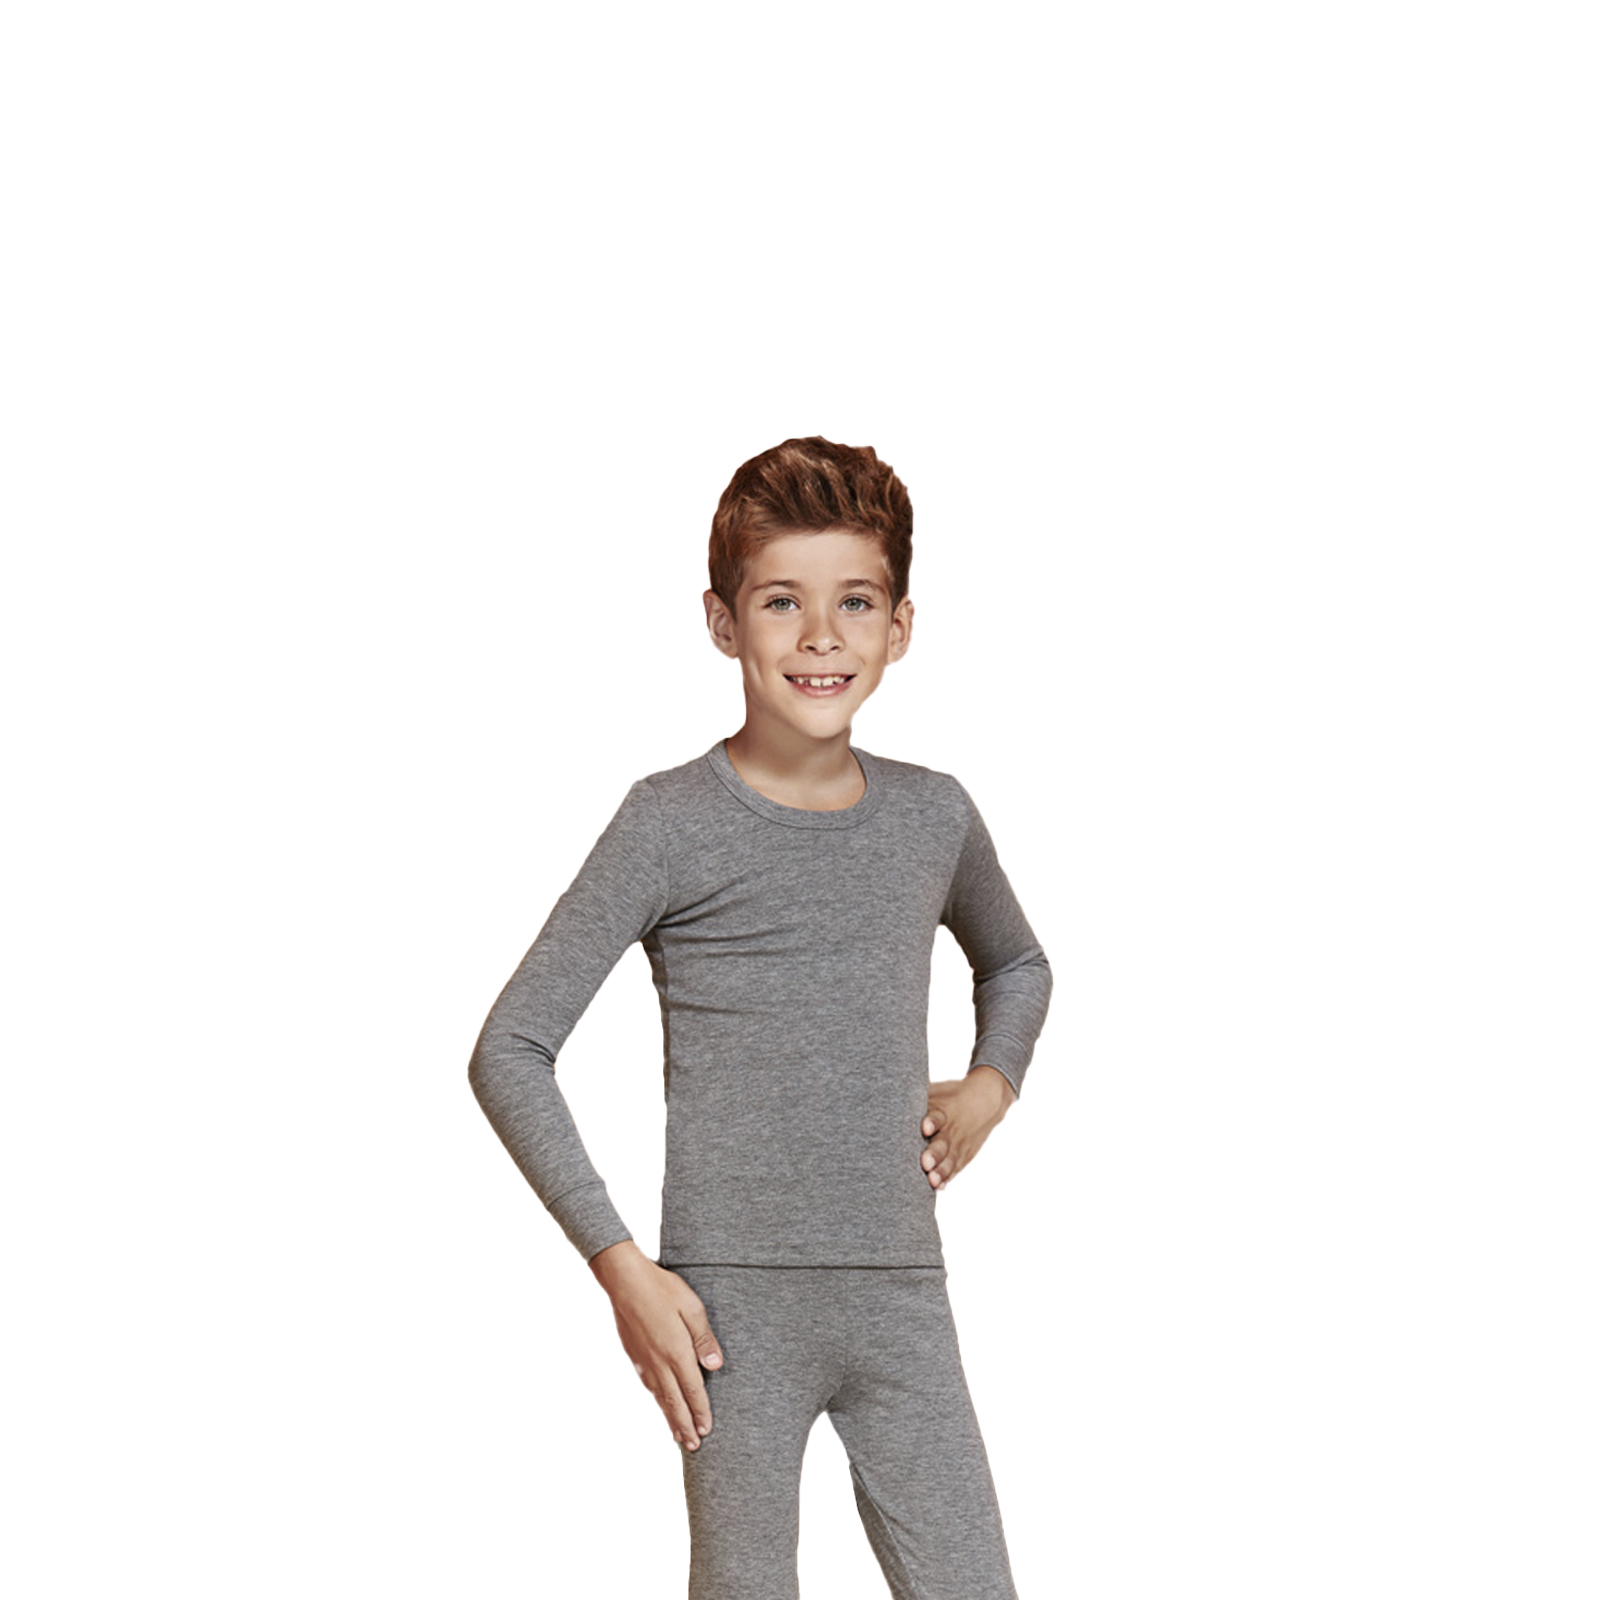 Детская термо-кофта для мальчика Berrak 847, цв.серый, р.128